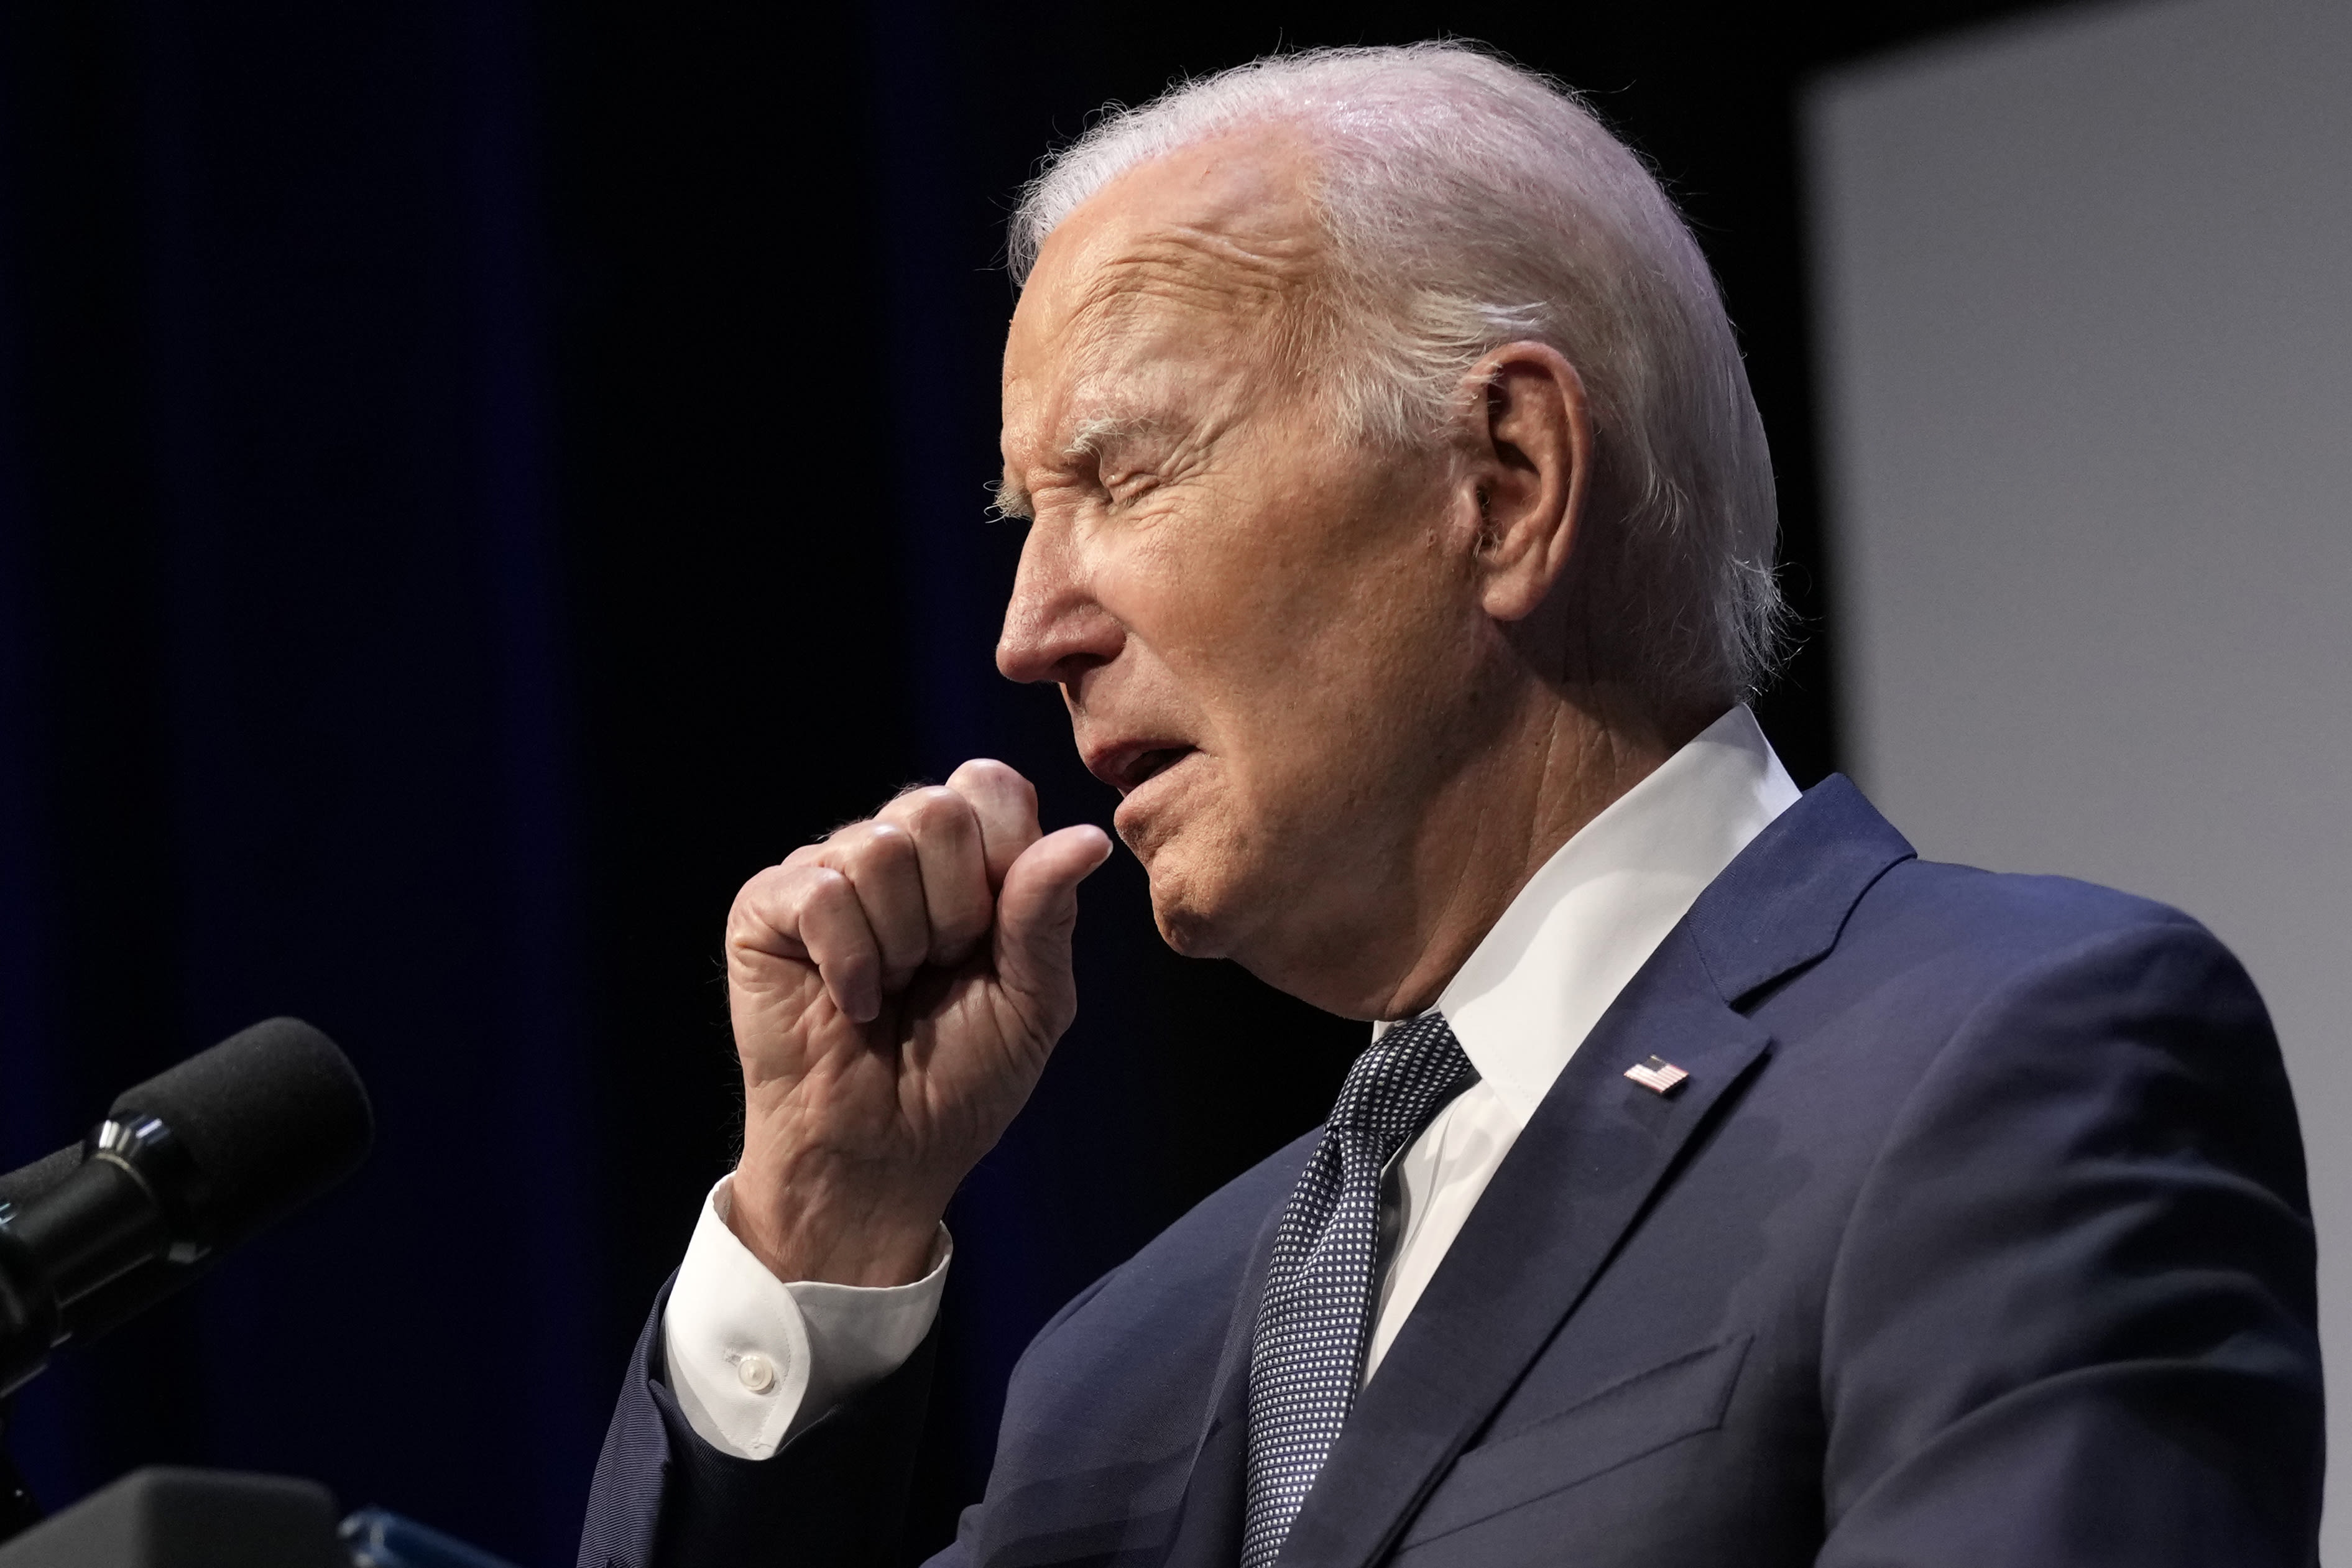 Joe Biden's doctor admits error, gives health update